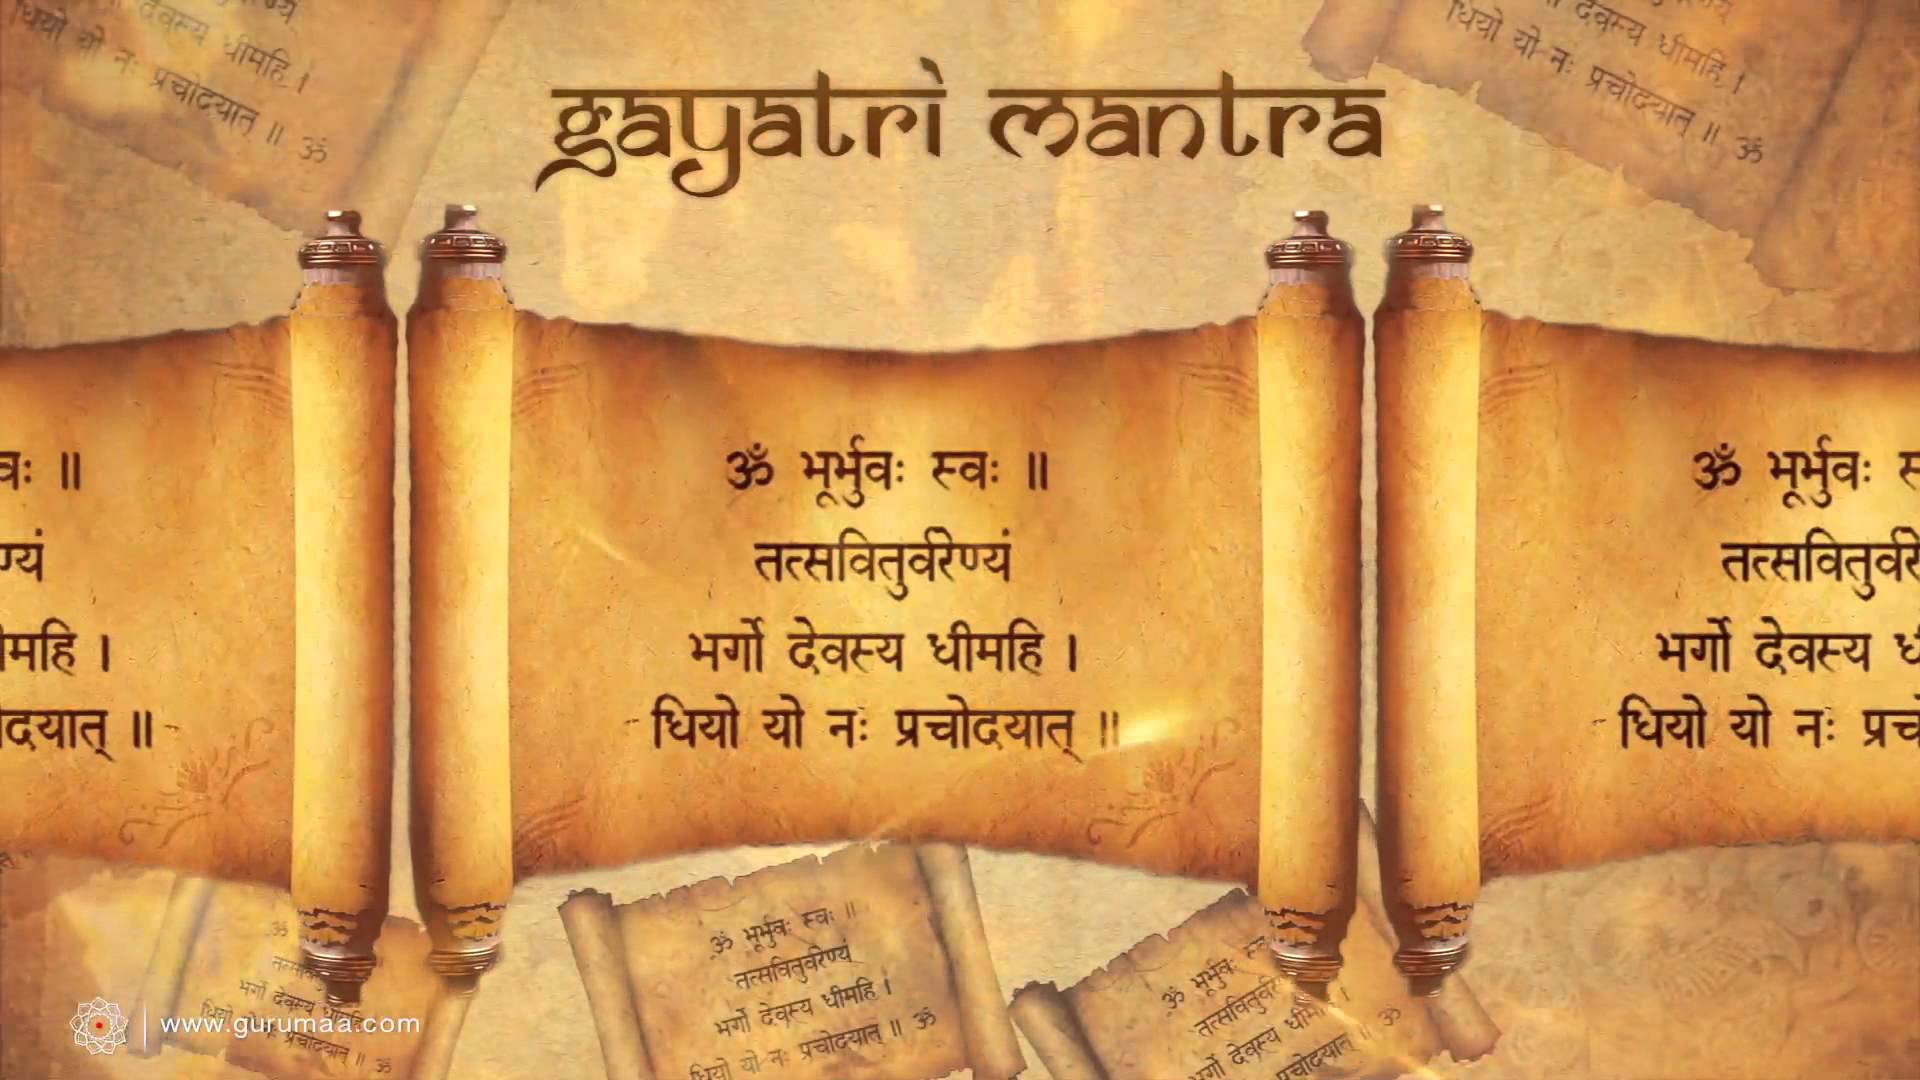 Gayatri Mantra Chanting 540 Times. Gayatri Mantra